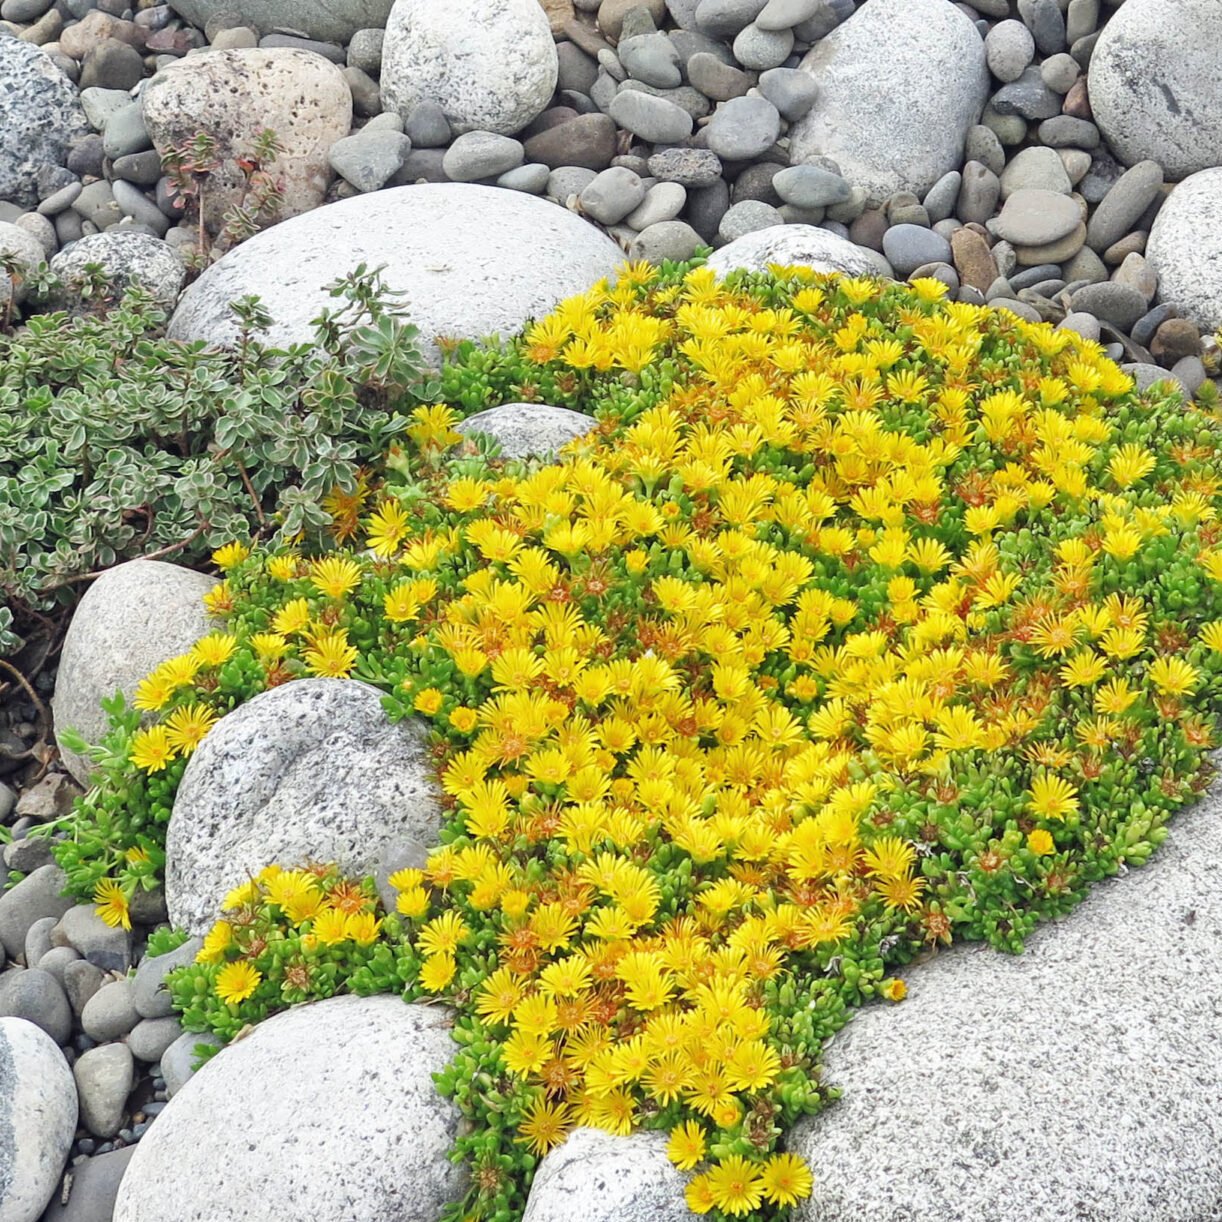 Yellow flowers in rock garden.